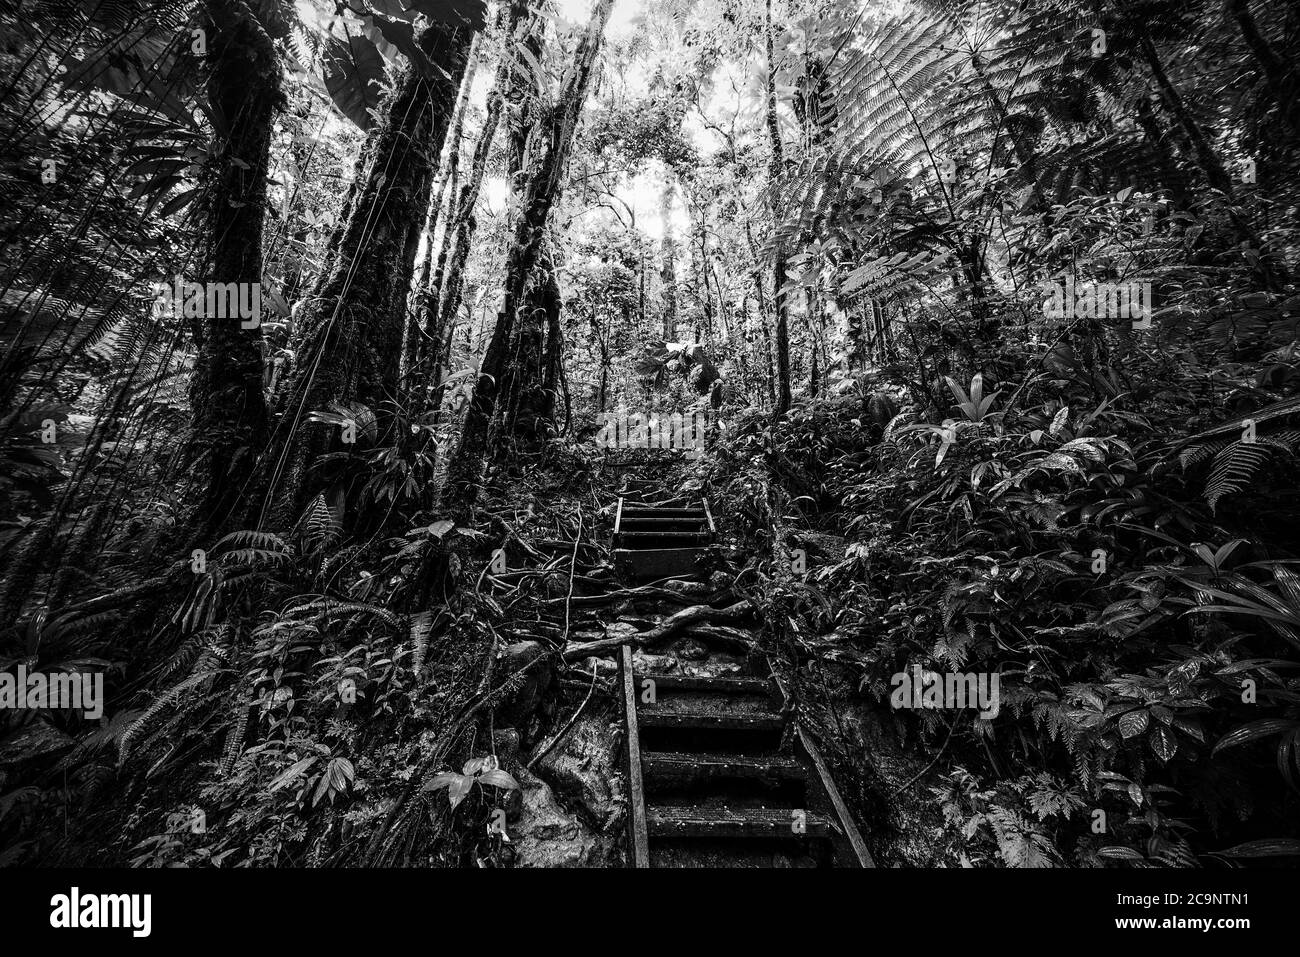 Escalier dans la jungle de la Guadeloupe. Antilles néerlandaises, Caraïbes. Effet noir et blanc Banque D'Images